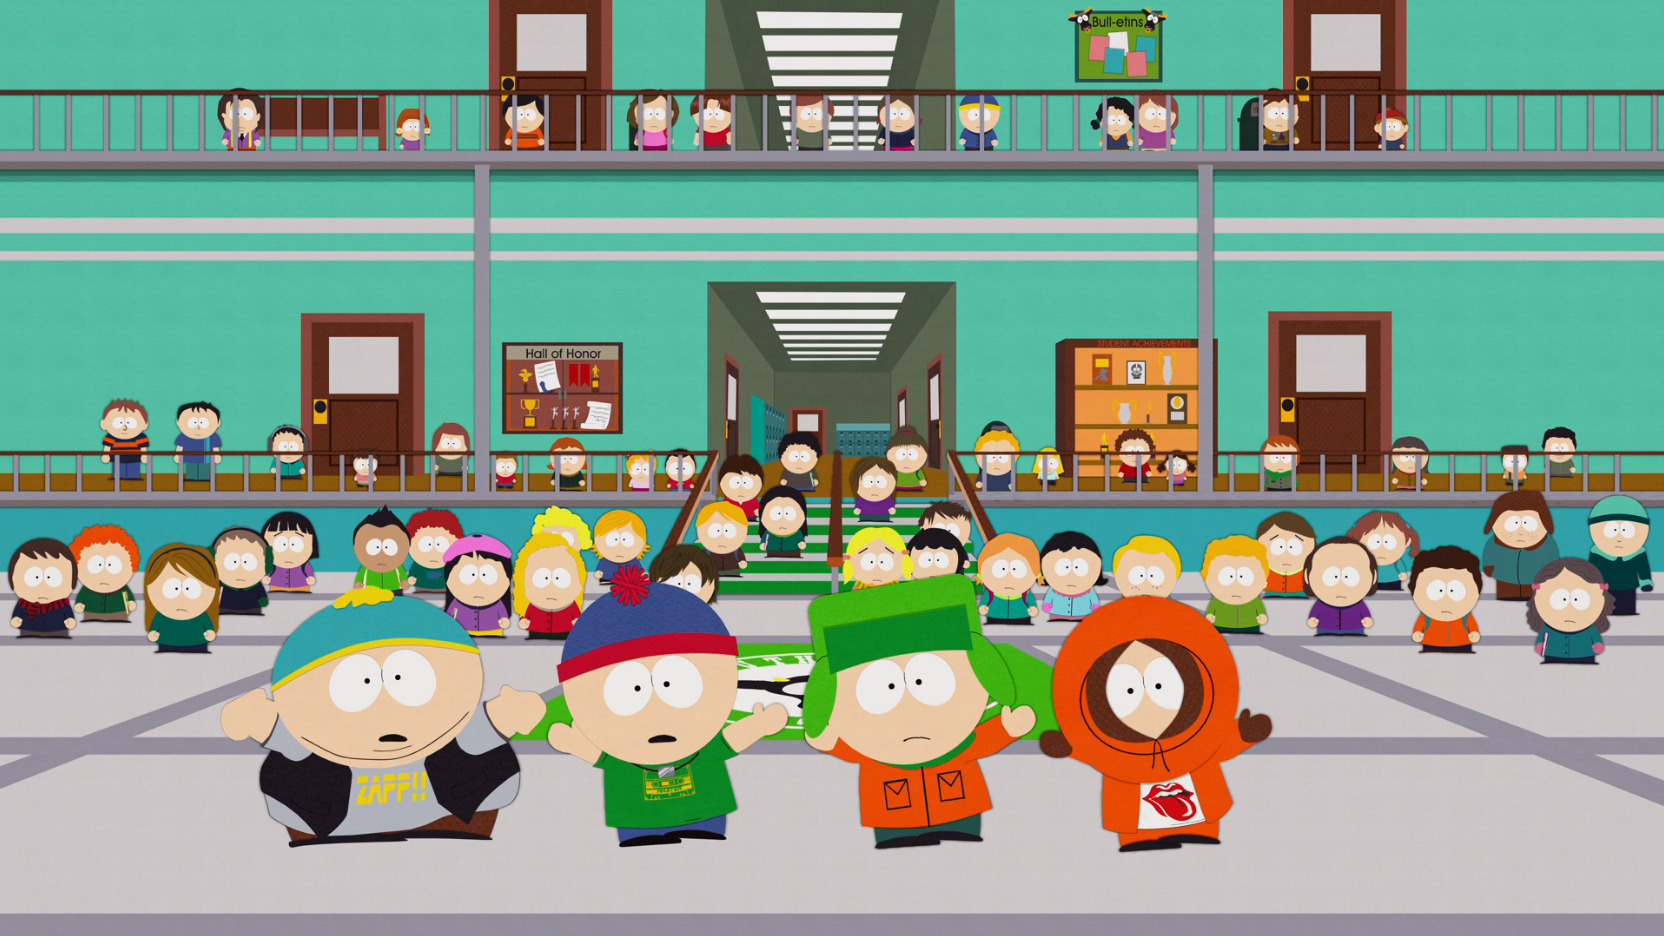 South Park S 12 E 13 Elementary School Musical / Recap - TV Tropes